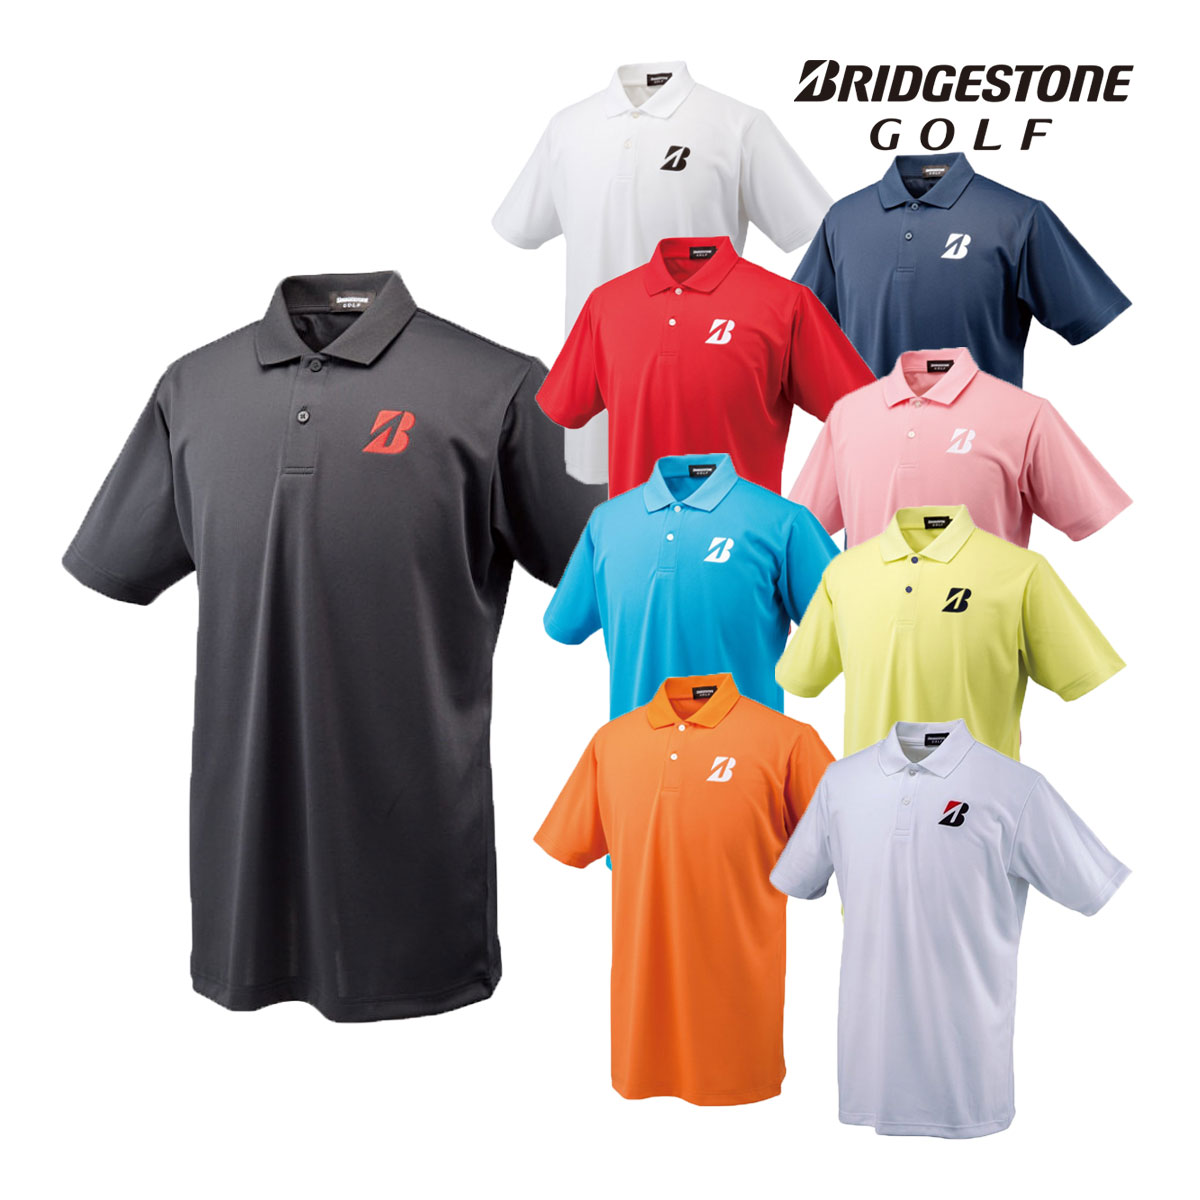 ブリヂストン ポロシャツ メンズ BridgestoneGolf ブリヂストンゴルフ ゴルフウエア 半袖ポロシャツ 「 50G01A 」 メンズ 【あす楽対応】